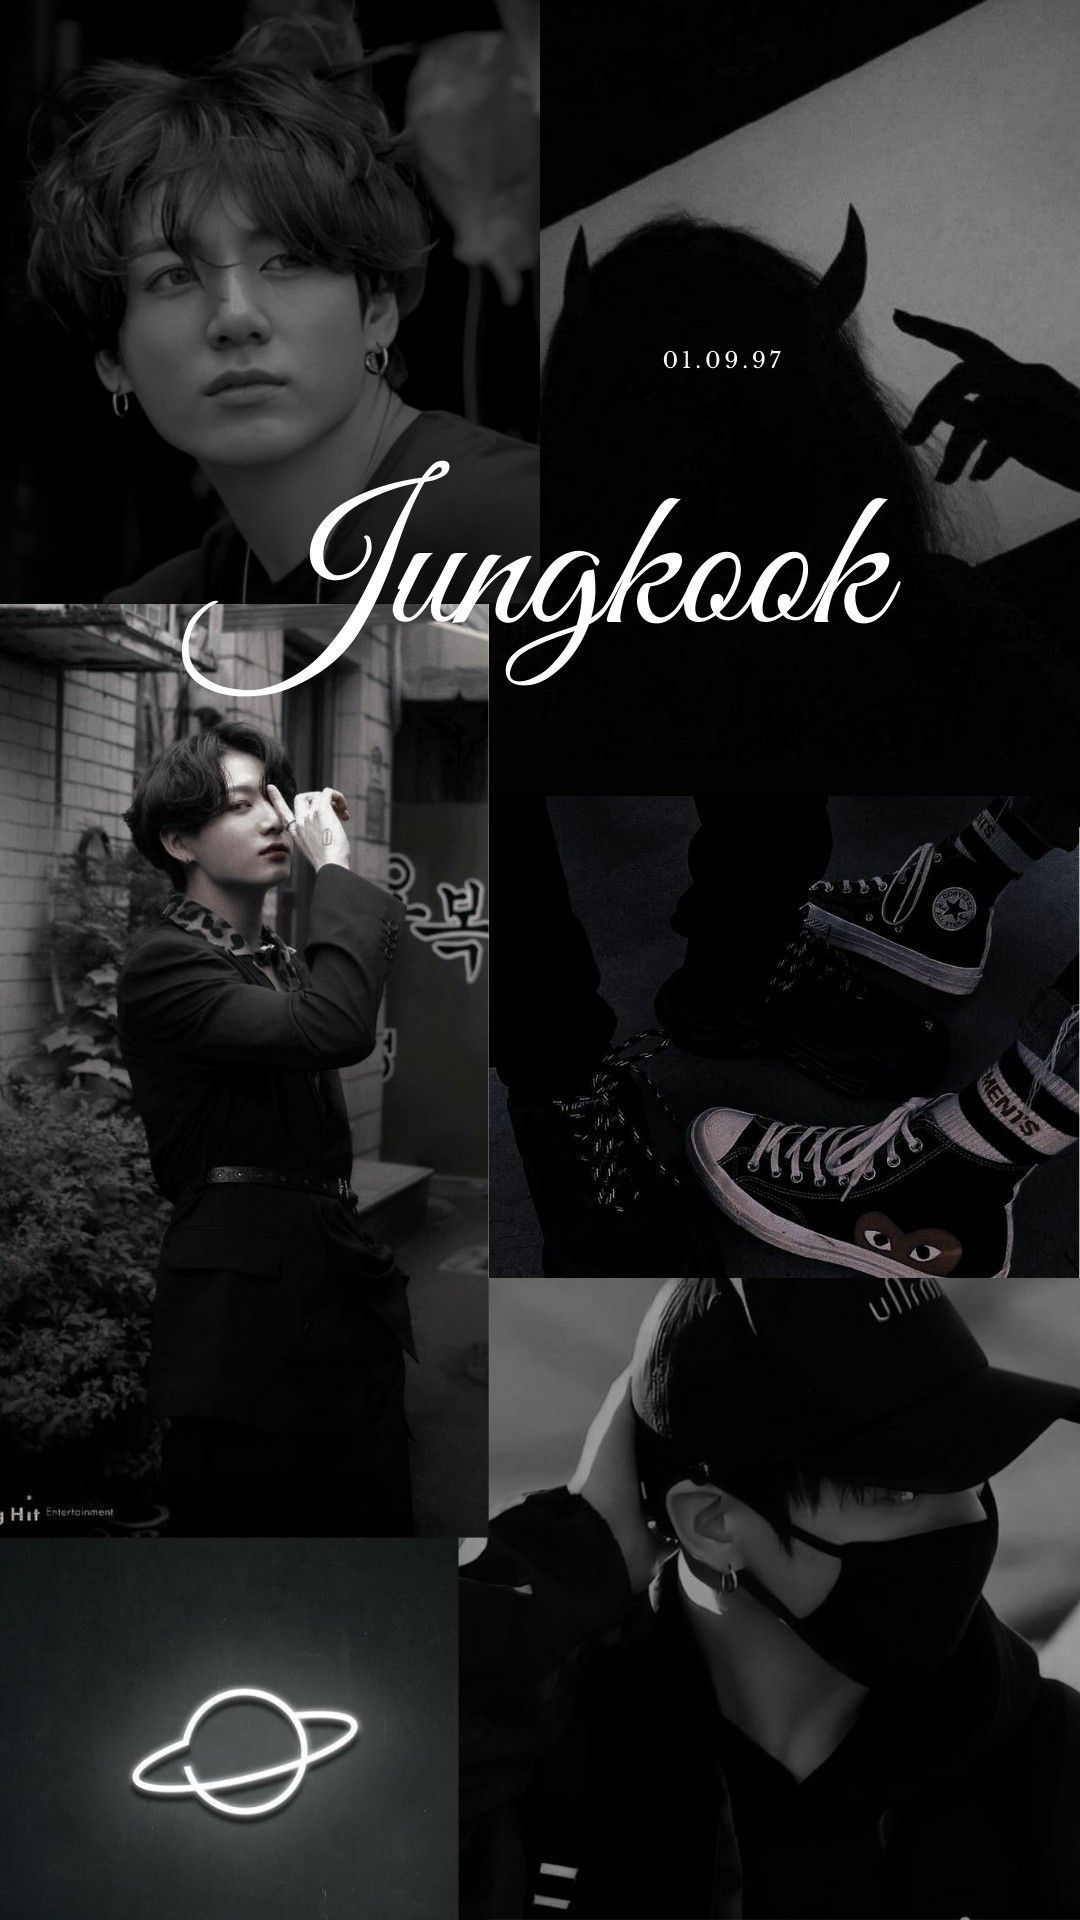 Jungkook black aesthetic wallpaper. Jungkook, Jeon jungkook photohoot, Jungkook cute